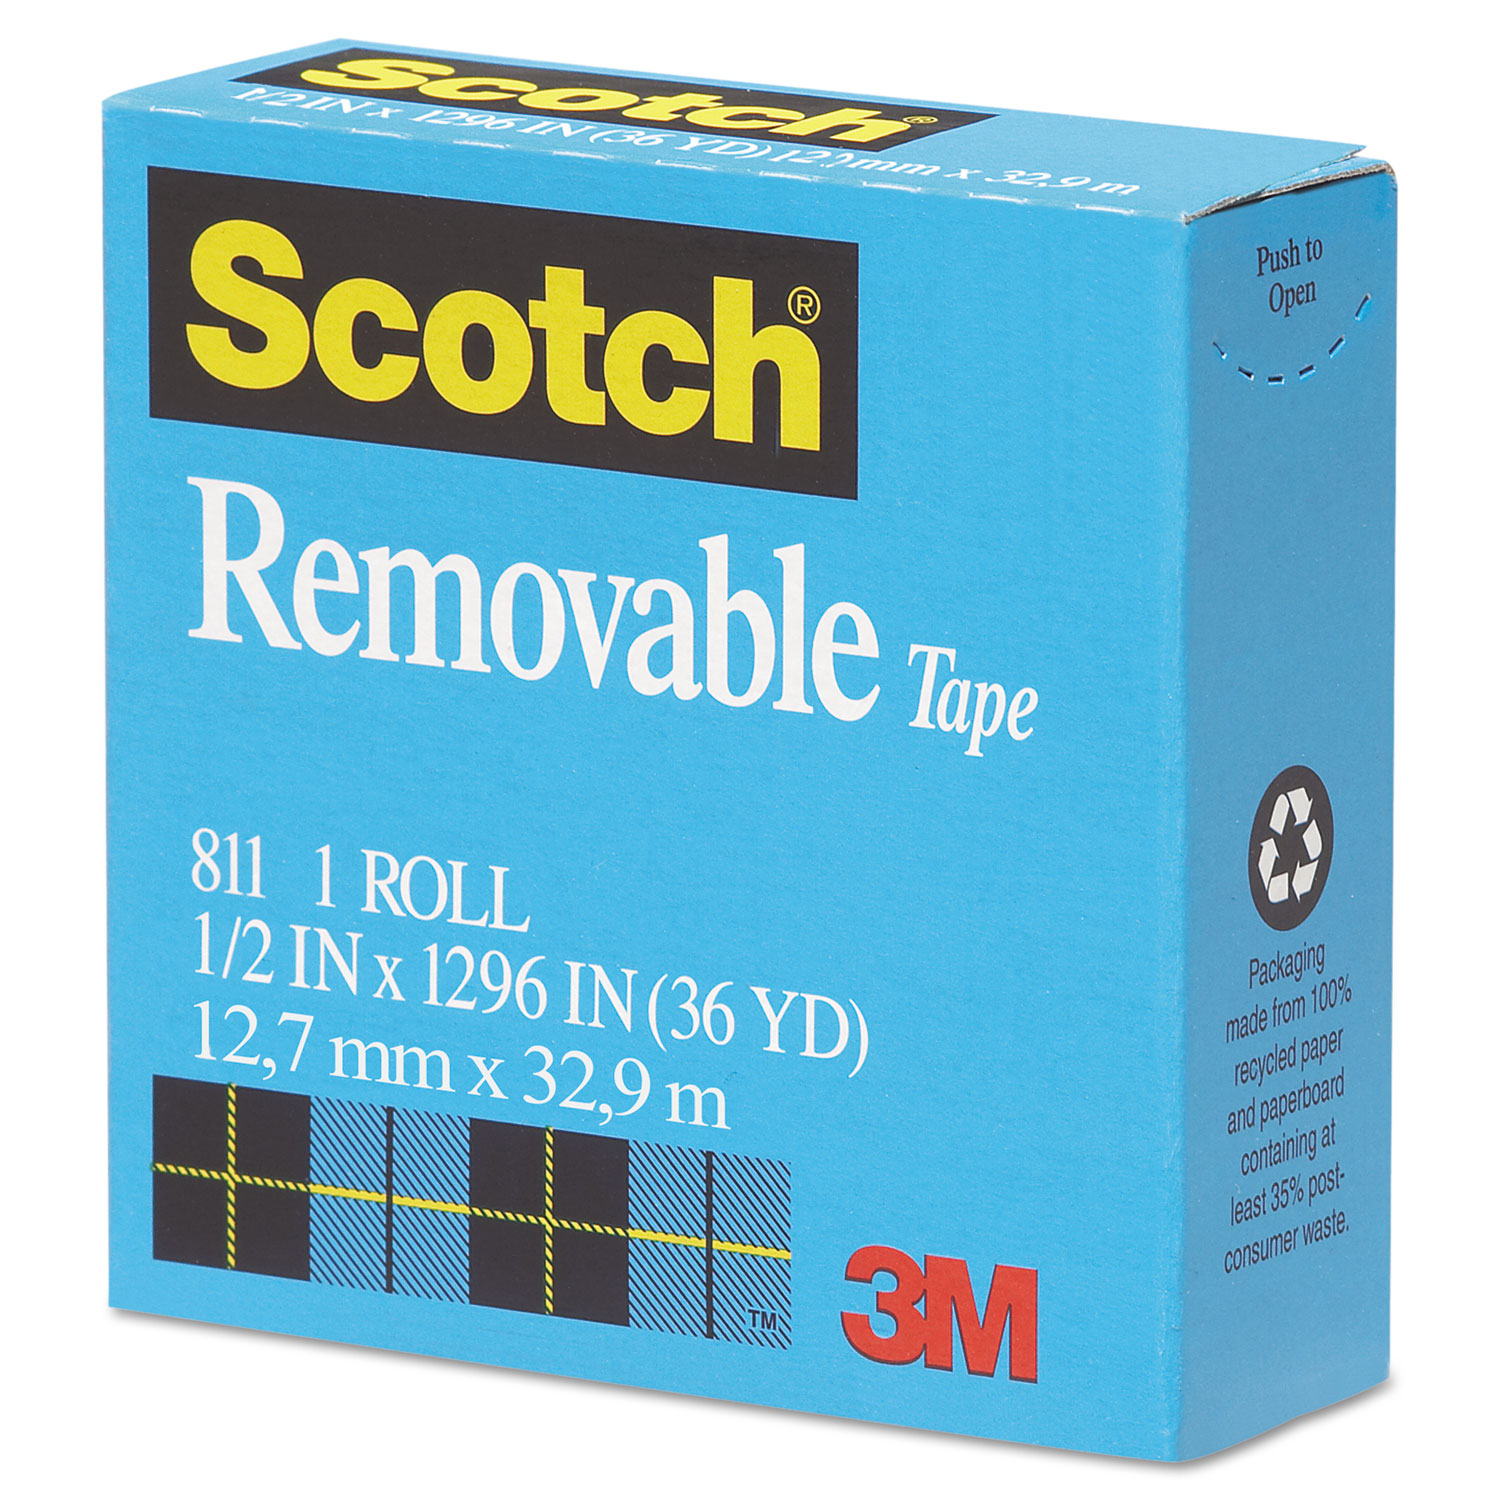 Removable Tape, 1/2 x 1296, 1 Core, Transparent